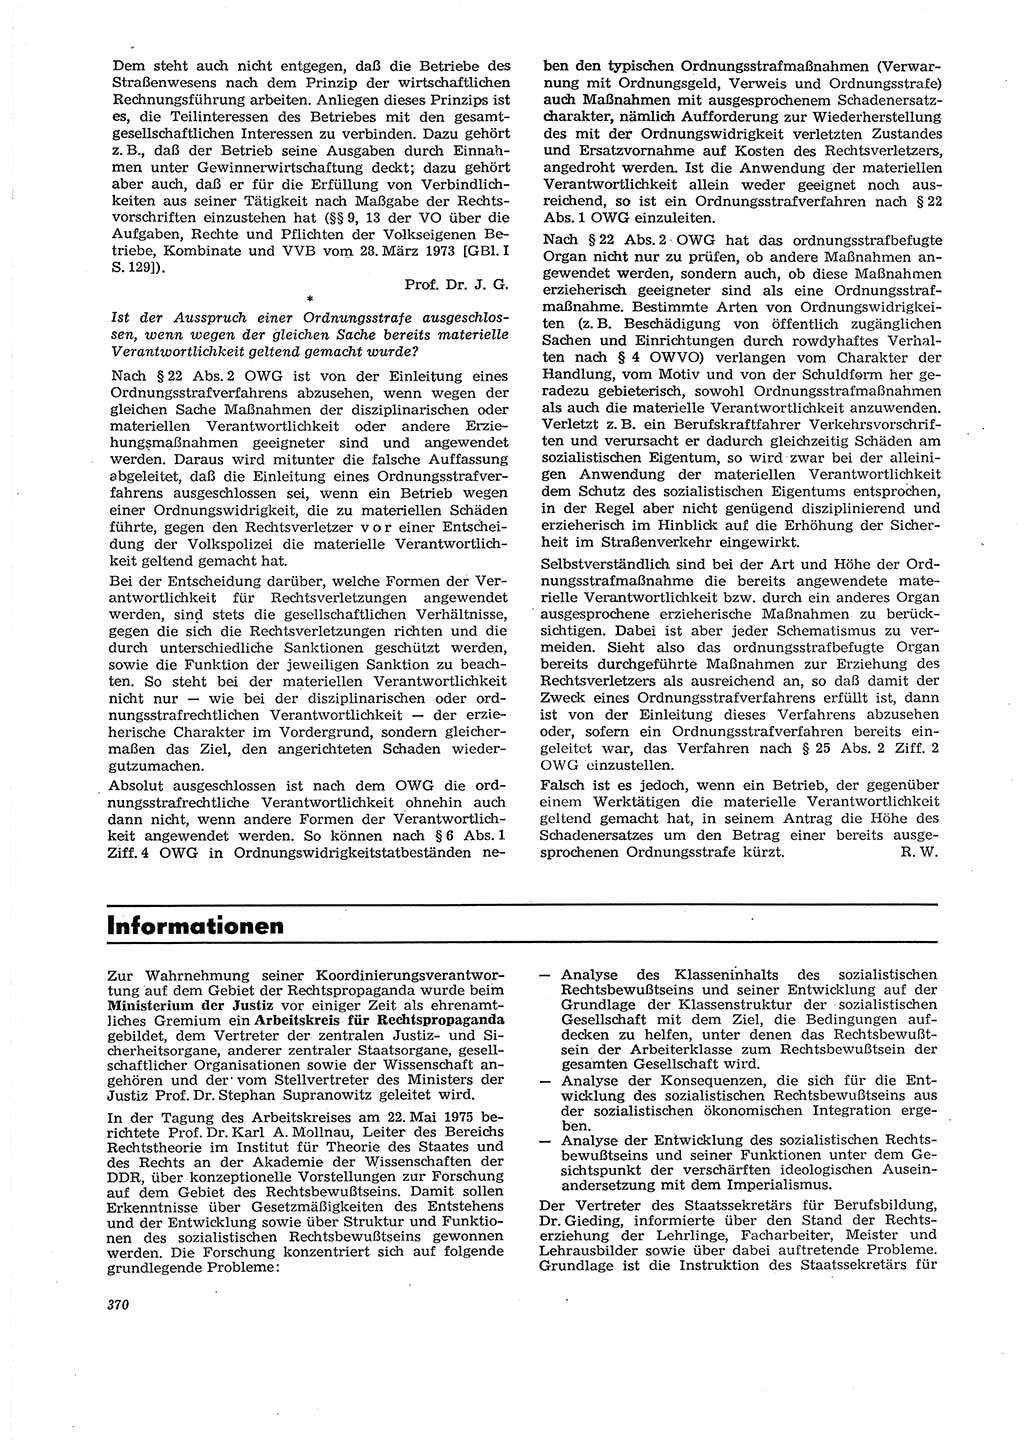 Neue Justiz (NJ), Zeitschrift für Recht und Rechtswissenschaft [Deutsche Demokratische Republik (DDR)], 29. Jahrgang 1975, Seite 370 (NJ DDR 1975, S. 370)